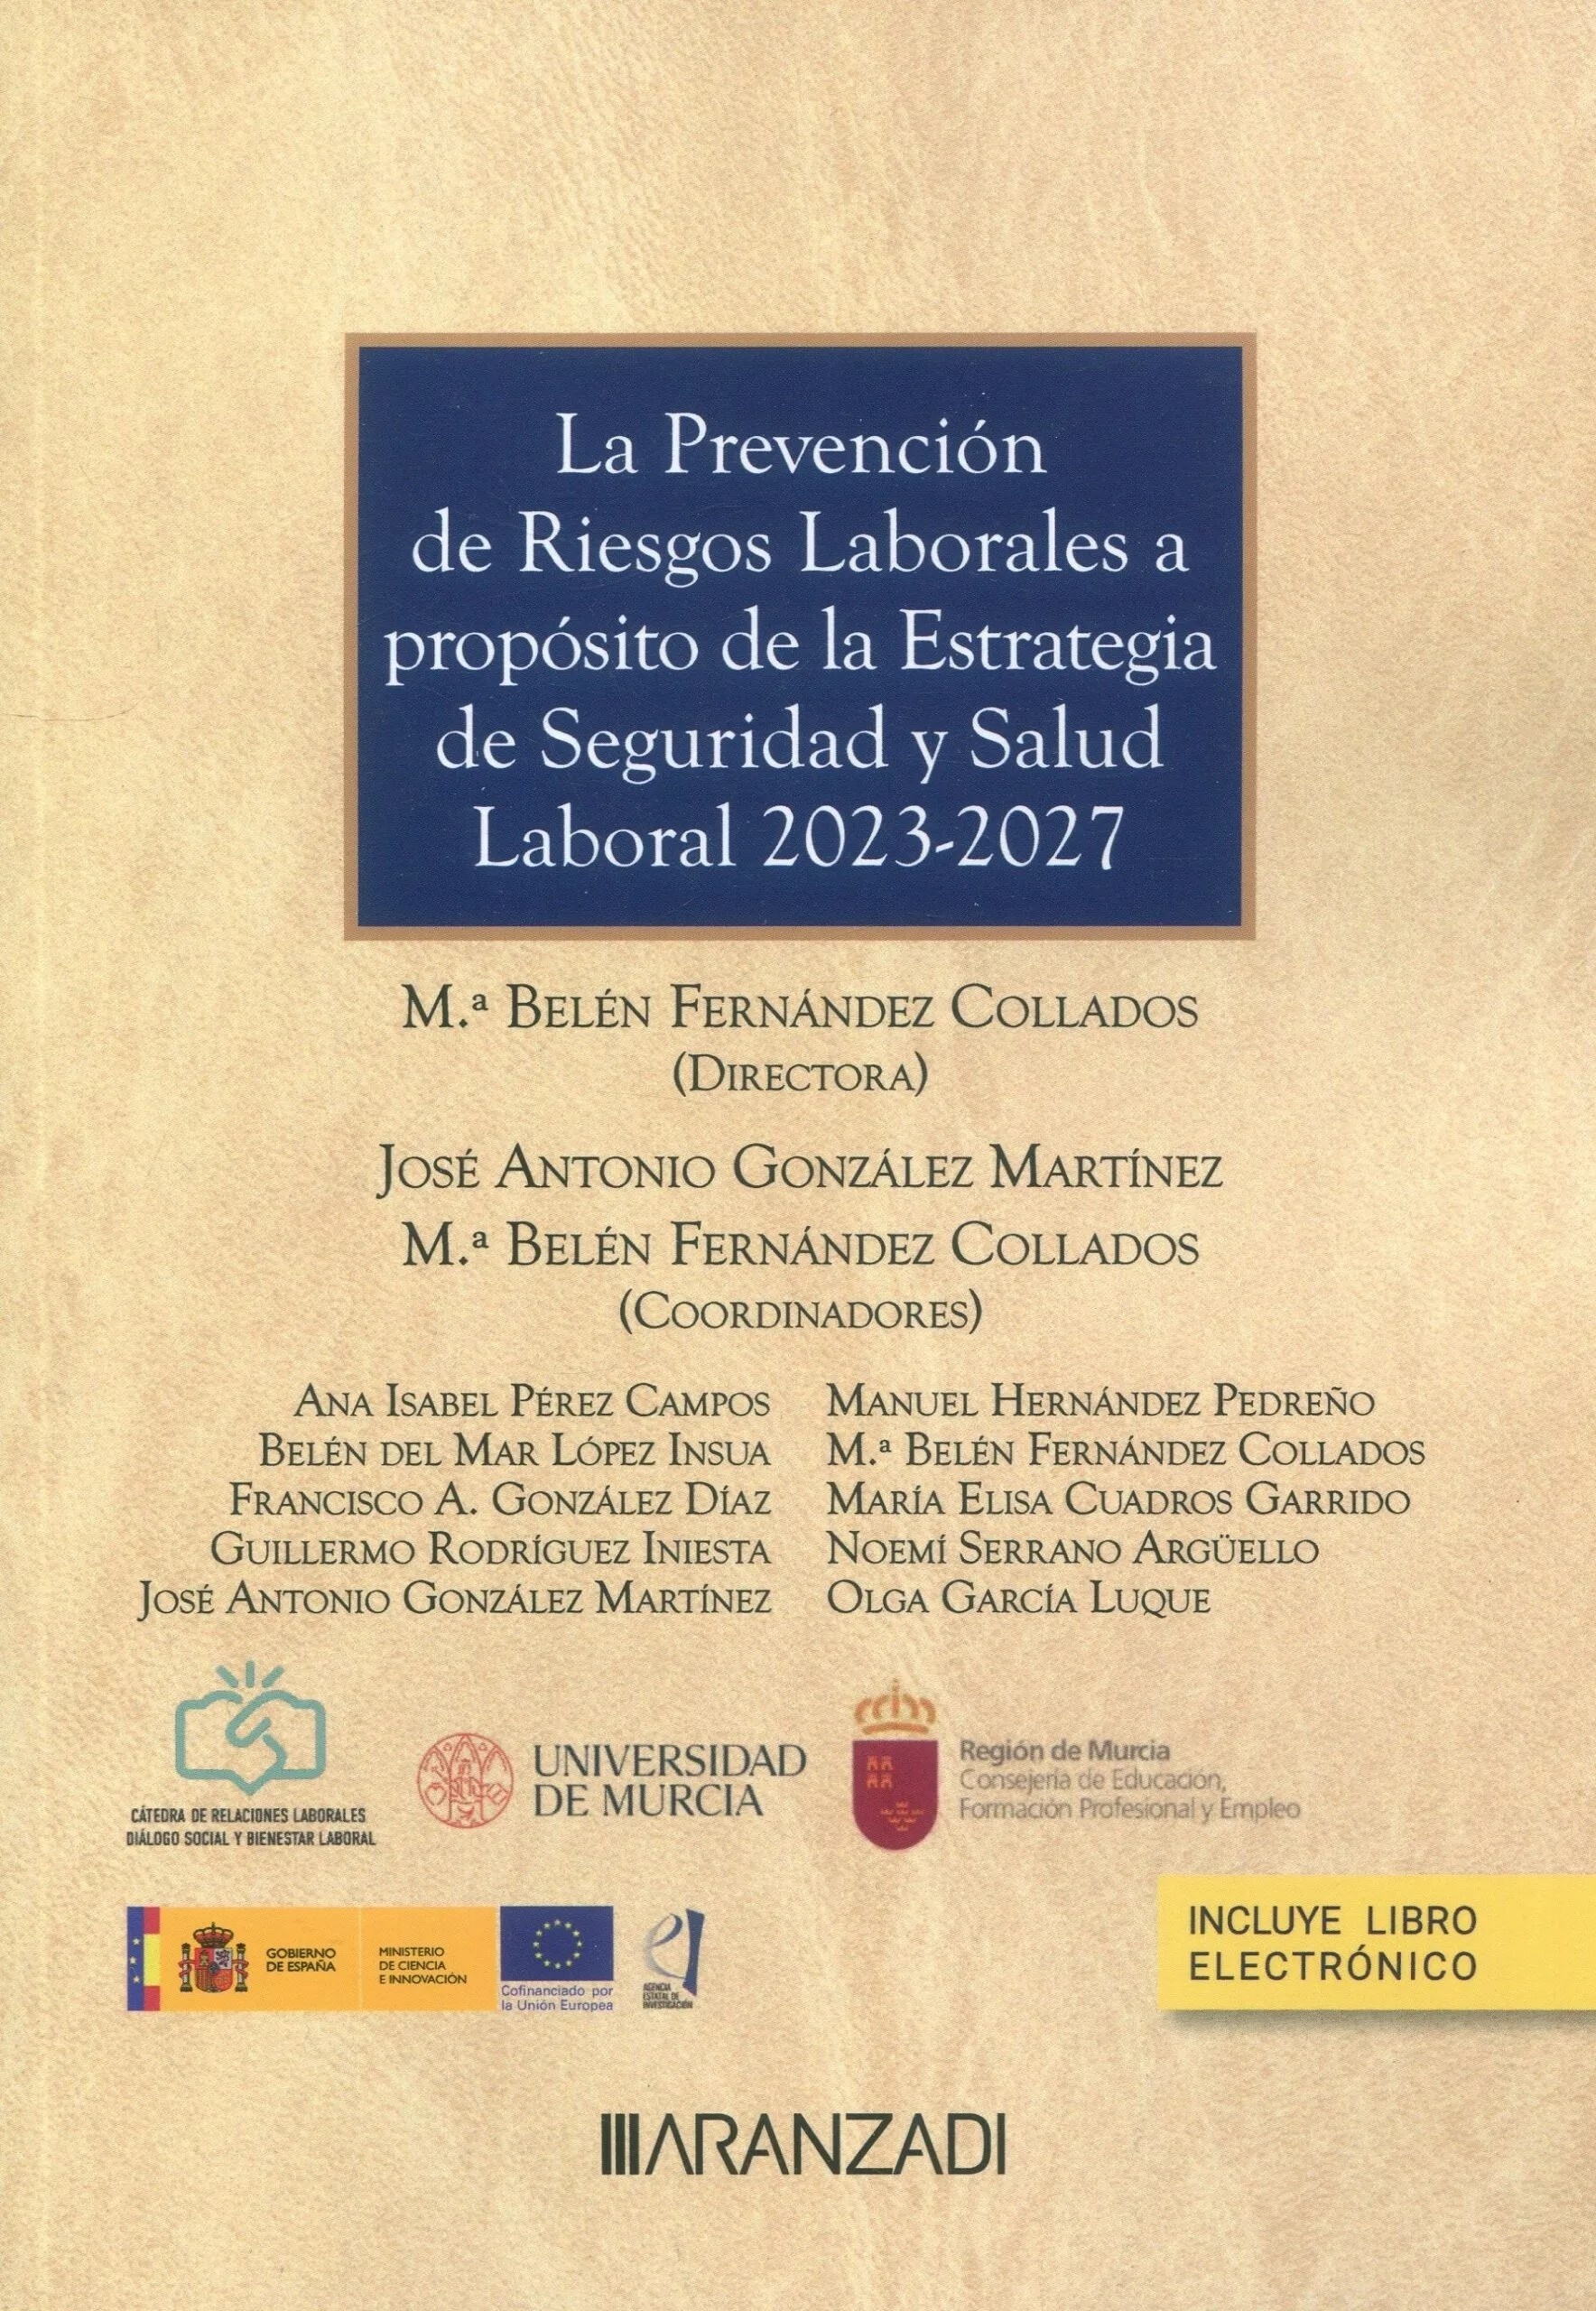 Prevencion de riesgos laborales a proposito de la estrategia de seguridad y salud laboral 2023-2027